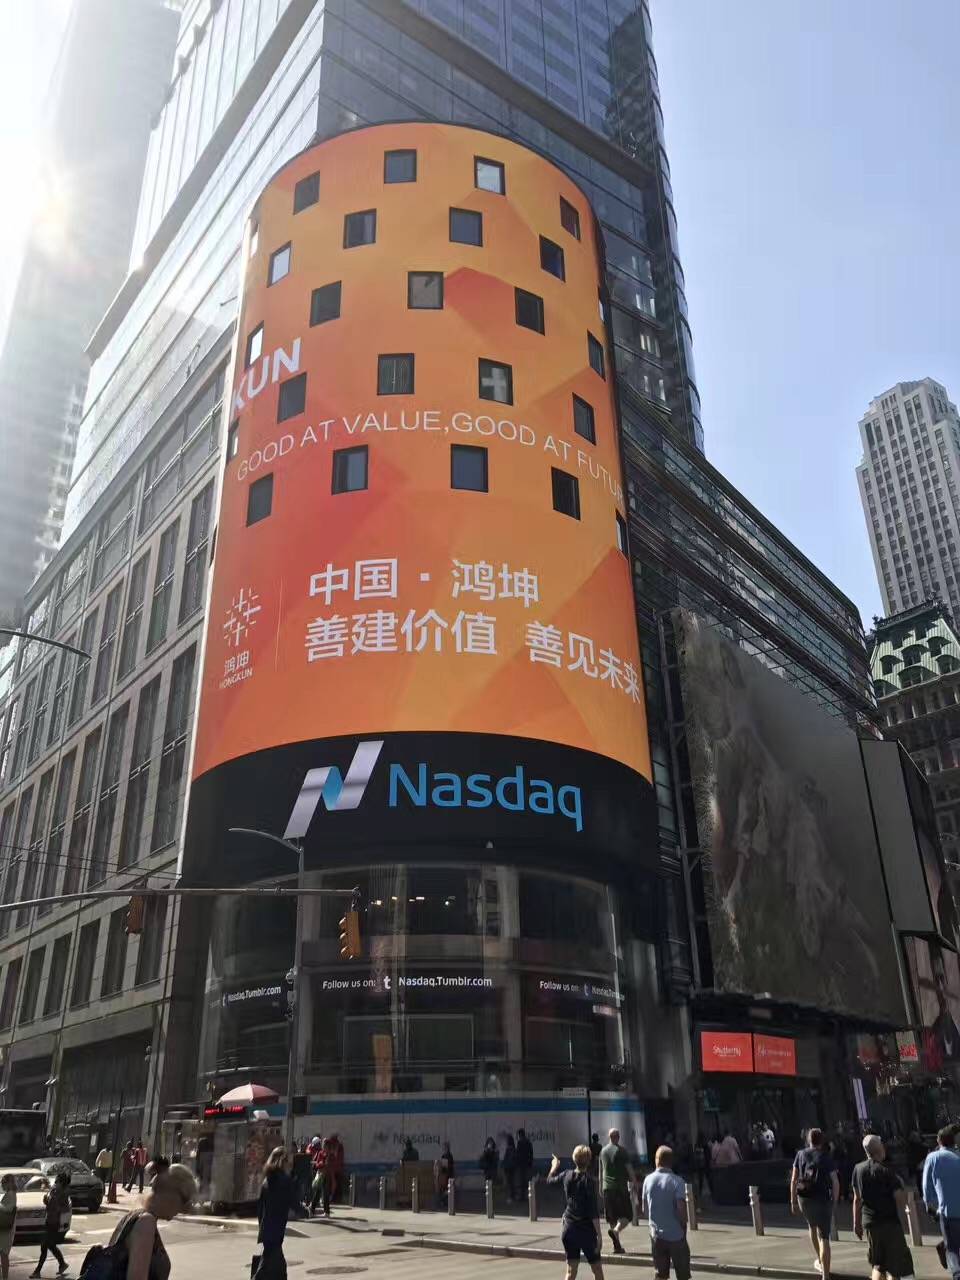 鸿坤集团创新型城市运营商广告登陆曼哈顿